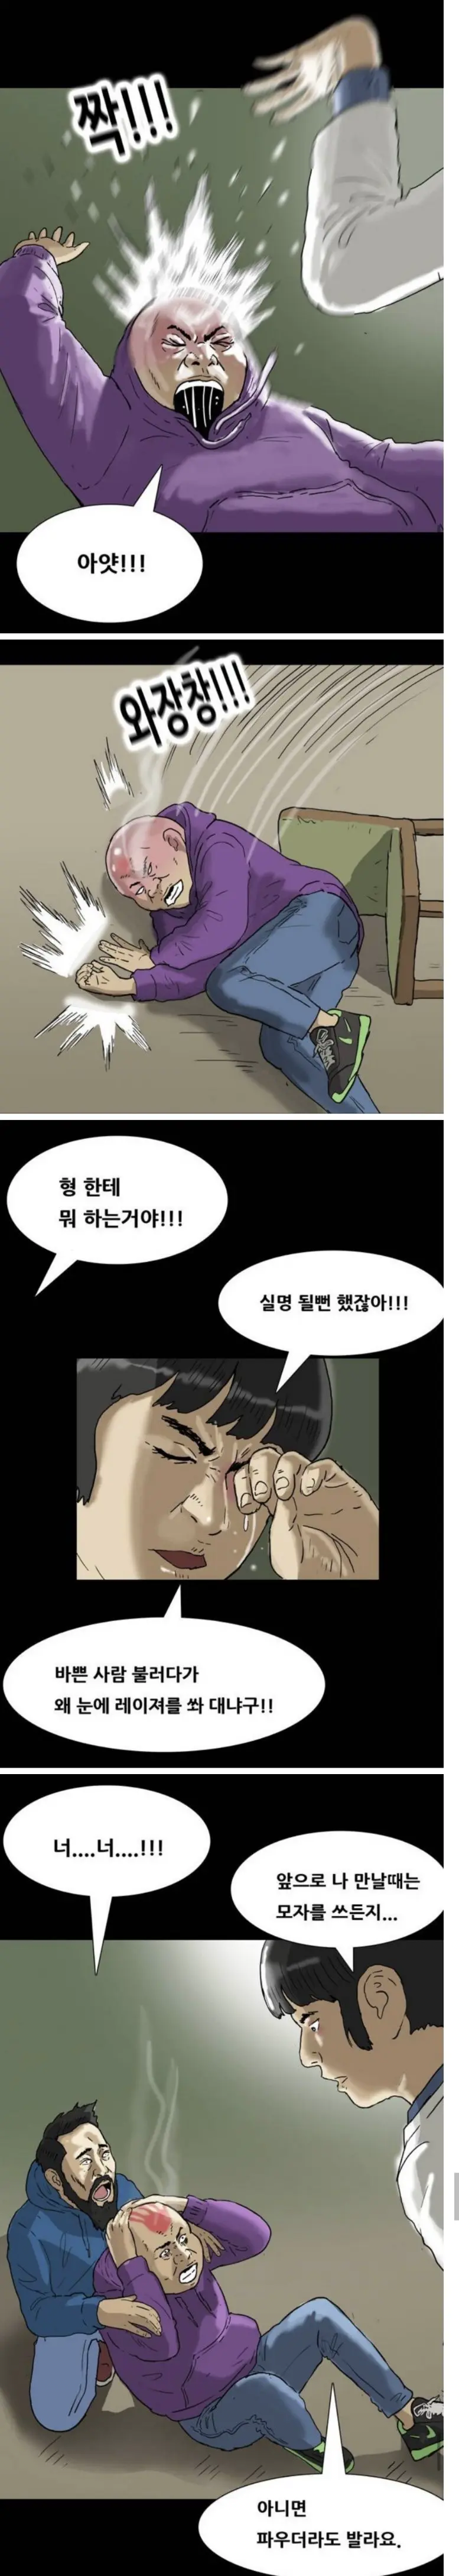 기안84 만화 올타임 레전드 ㅋㅋ..jpg | mbong.kr 엠봉